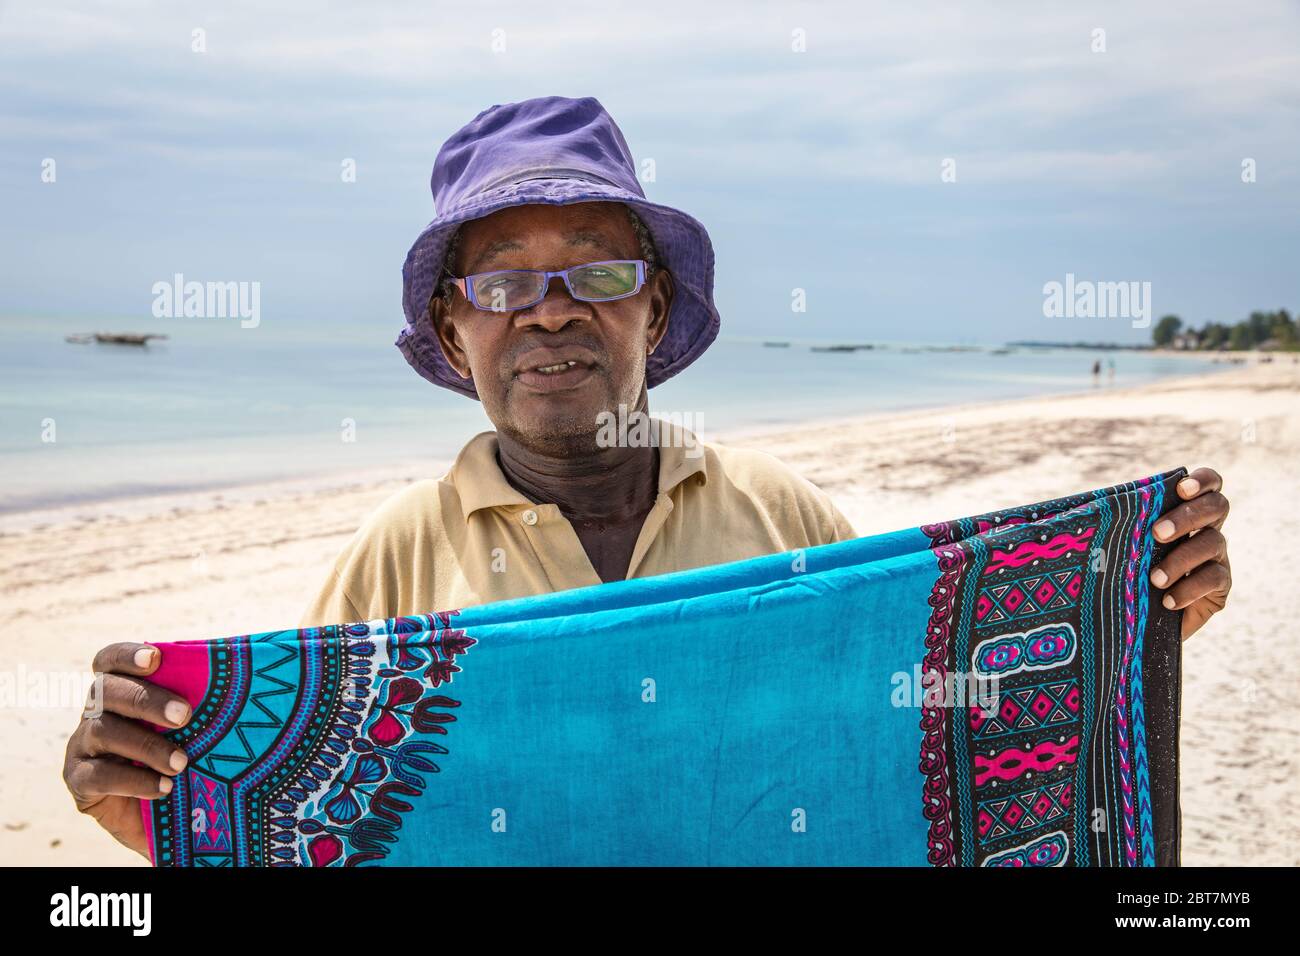 Zanzibar, au large de la côte tanzanienne, est l'un des grands creusets culturels du monde, avec des influences arabes, indiennes, européennes et africaines indigènes. Banque D'Images